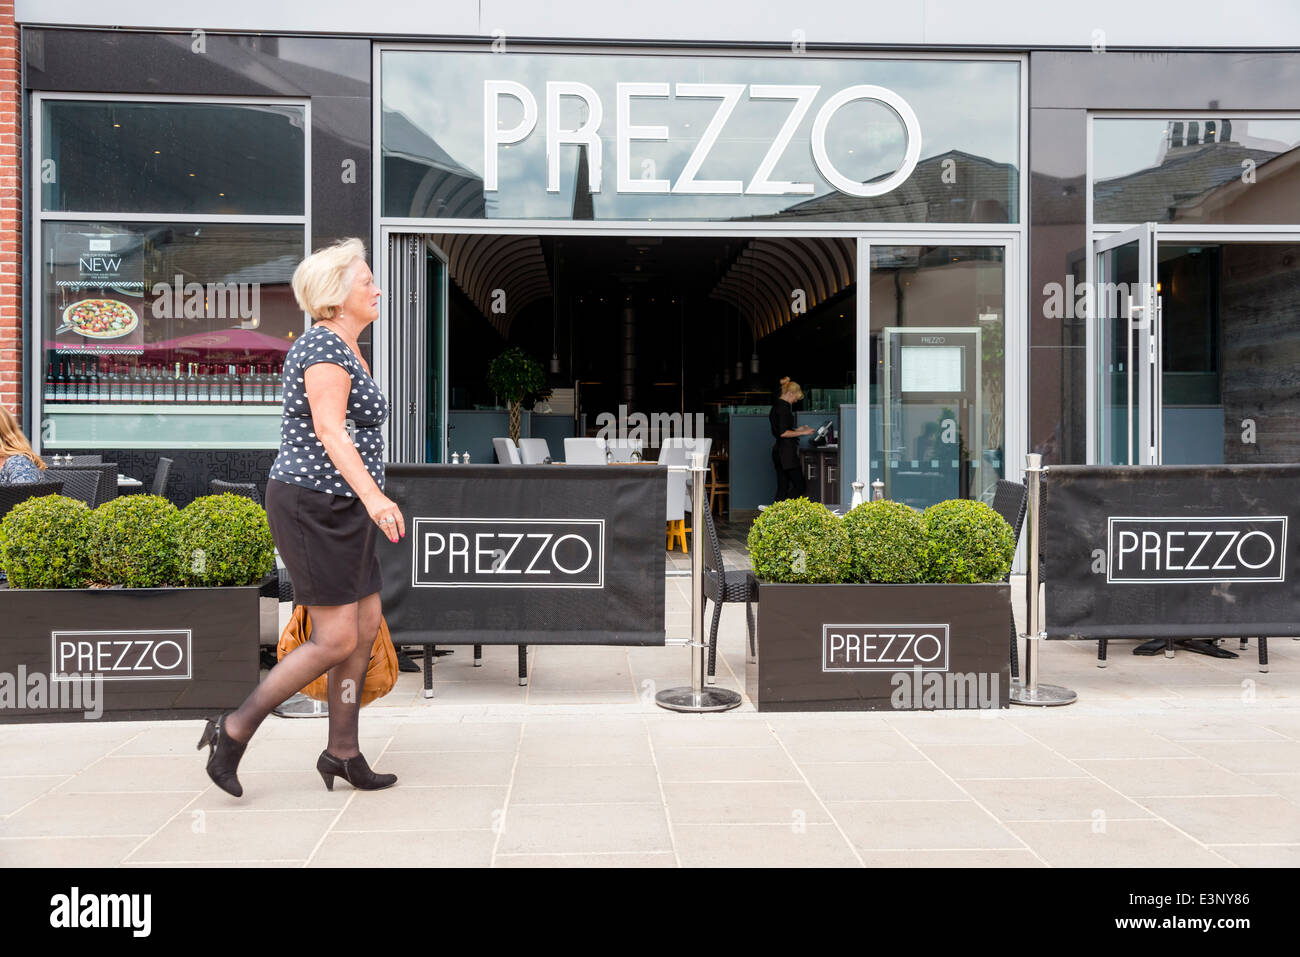 Prezzo restaurant in the UK. Stock Photo